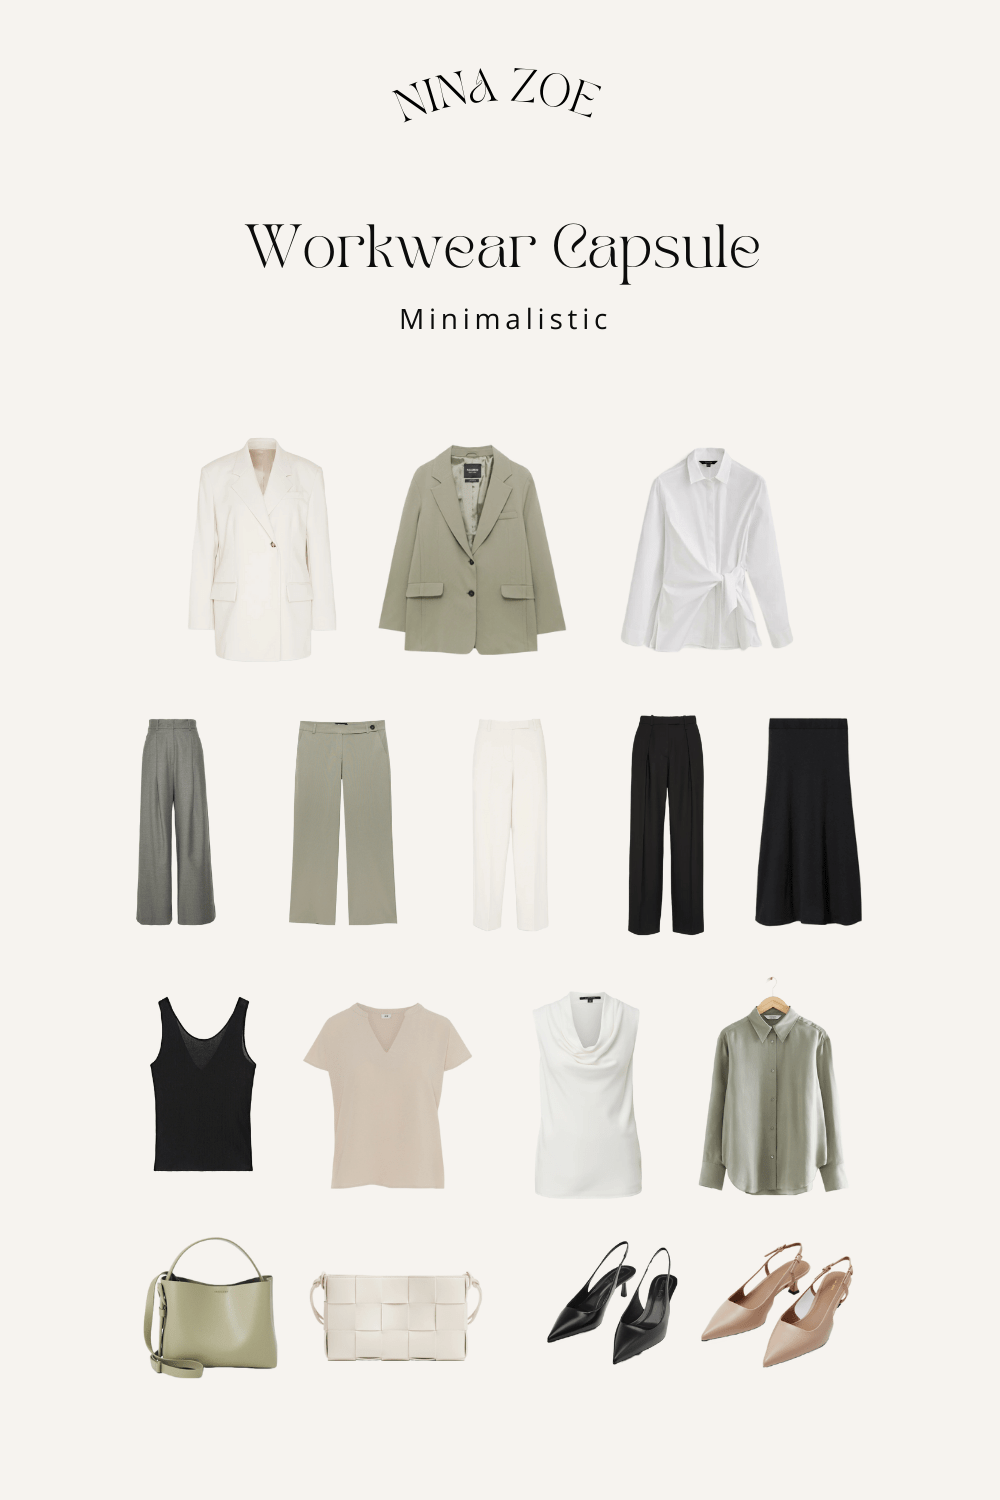 Capsule Wardrobe im minimalistischen Stil, Stilberatung Capsule Wardrobe, Stilberatung Beruf Outfits